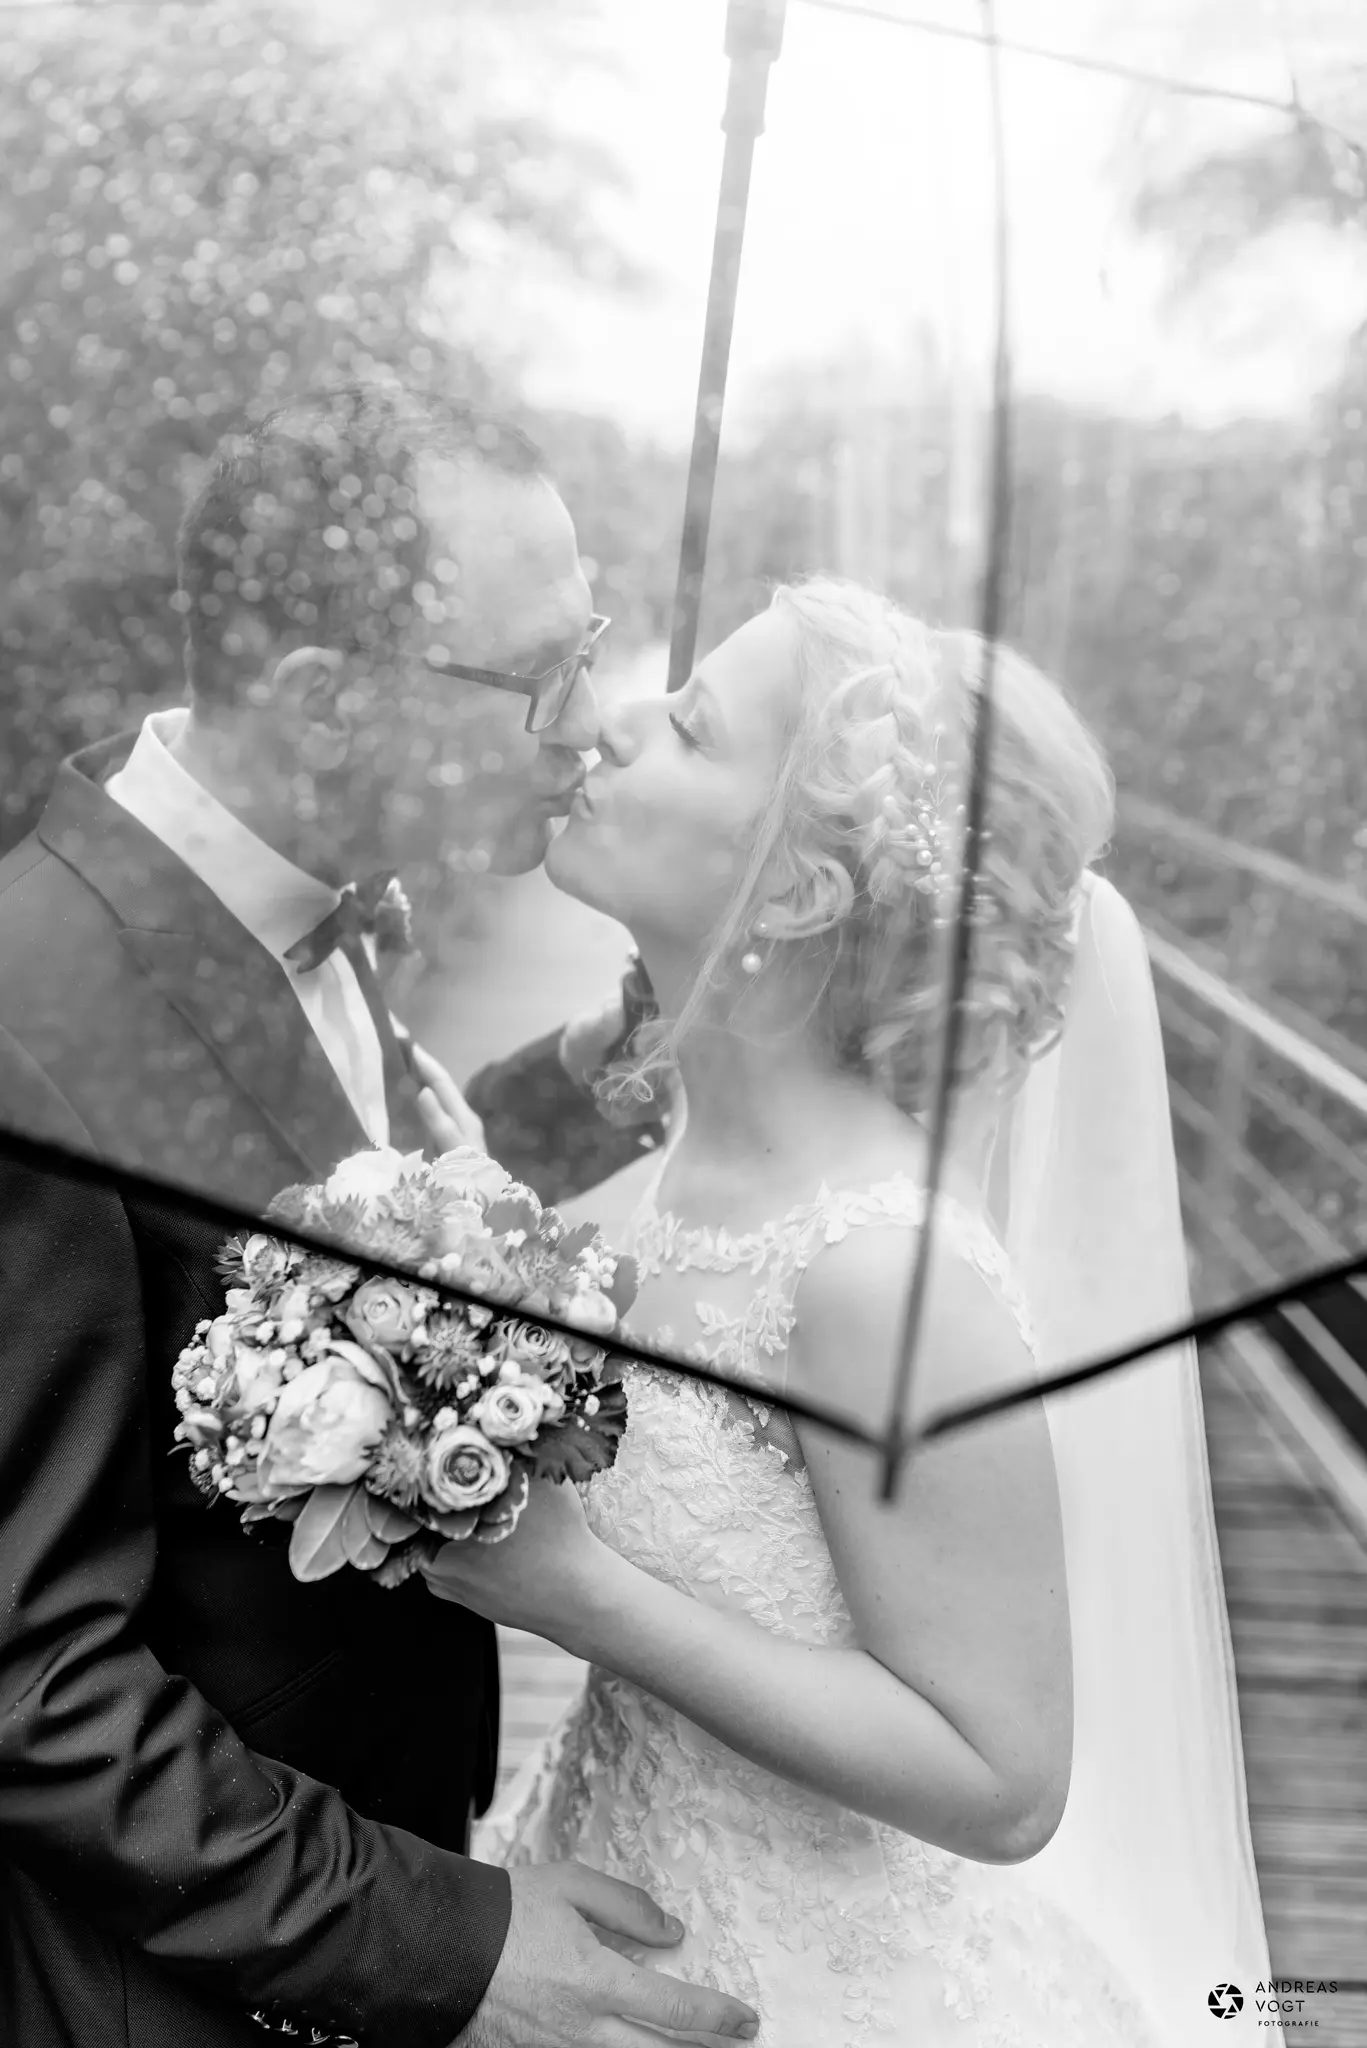 Hochzeitsfotos im Regen mit Regenschirm - Fotograf Andreas Vogt